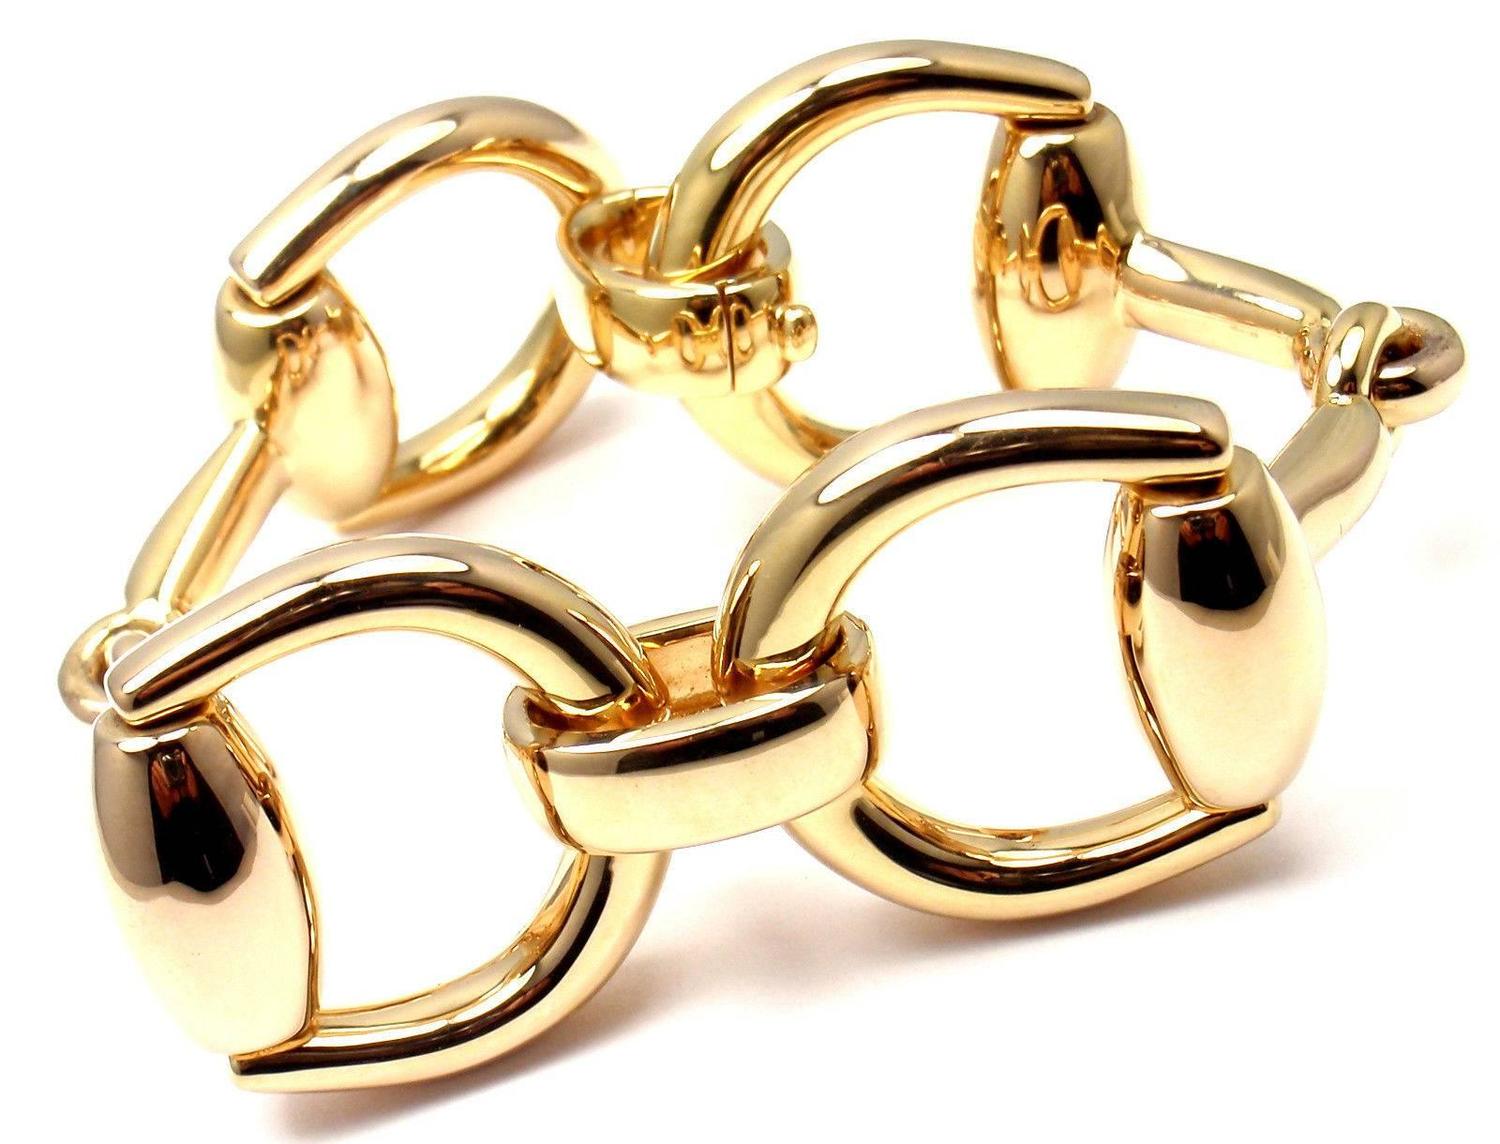 Gucci Gold Horsebit Large Link Bracelet For Sale at 1stdibs